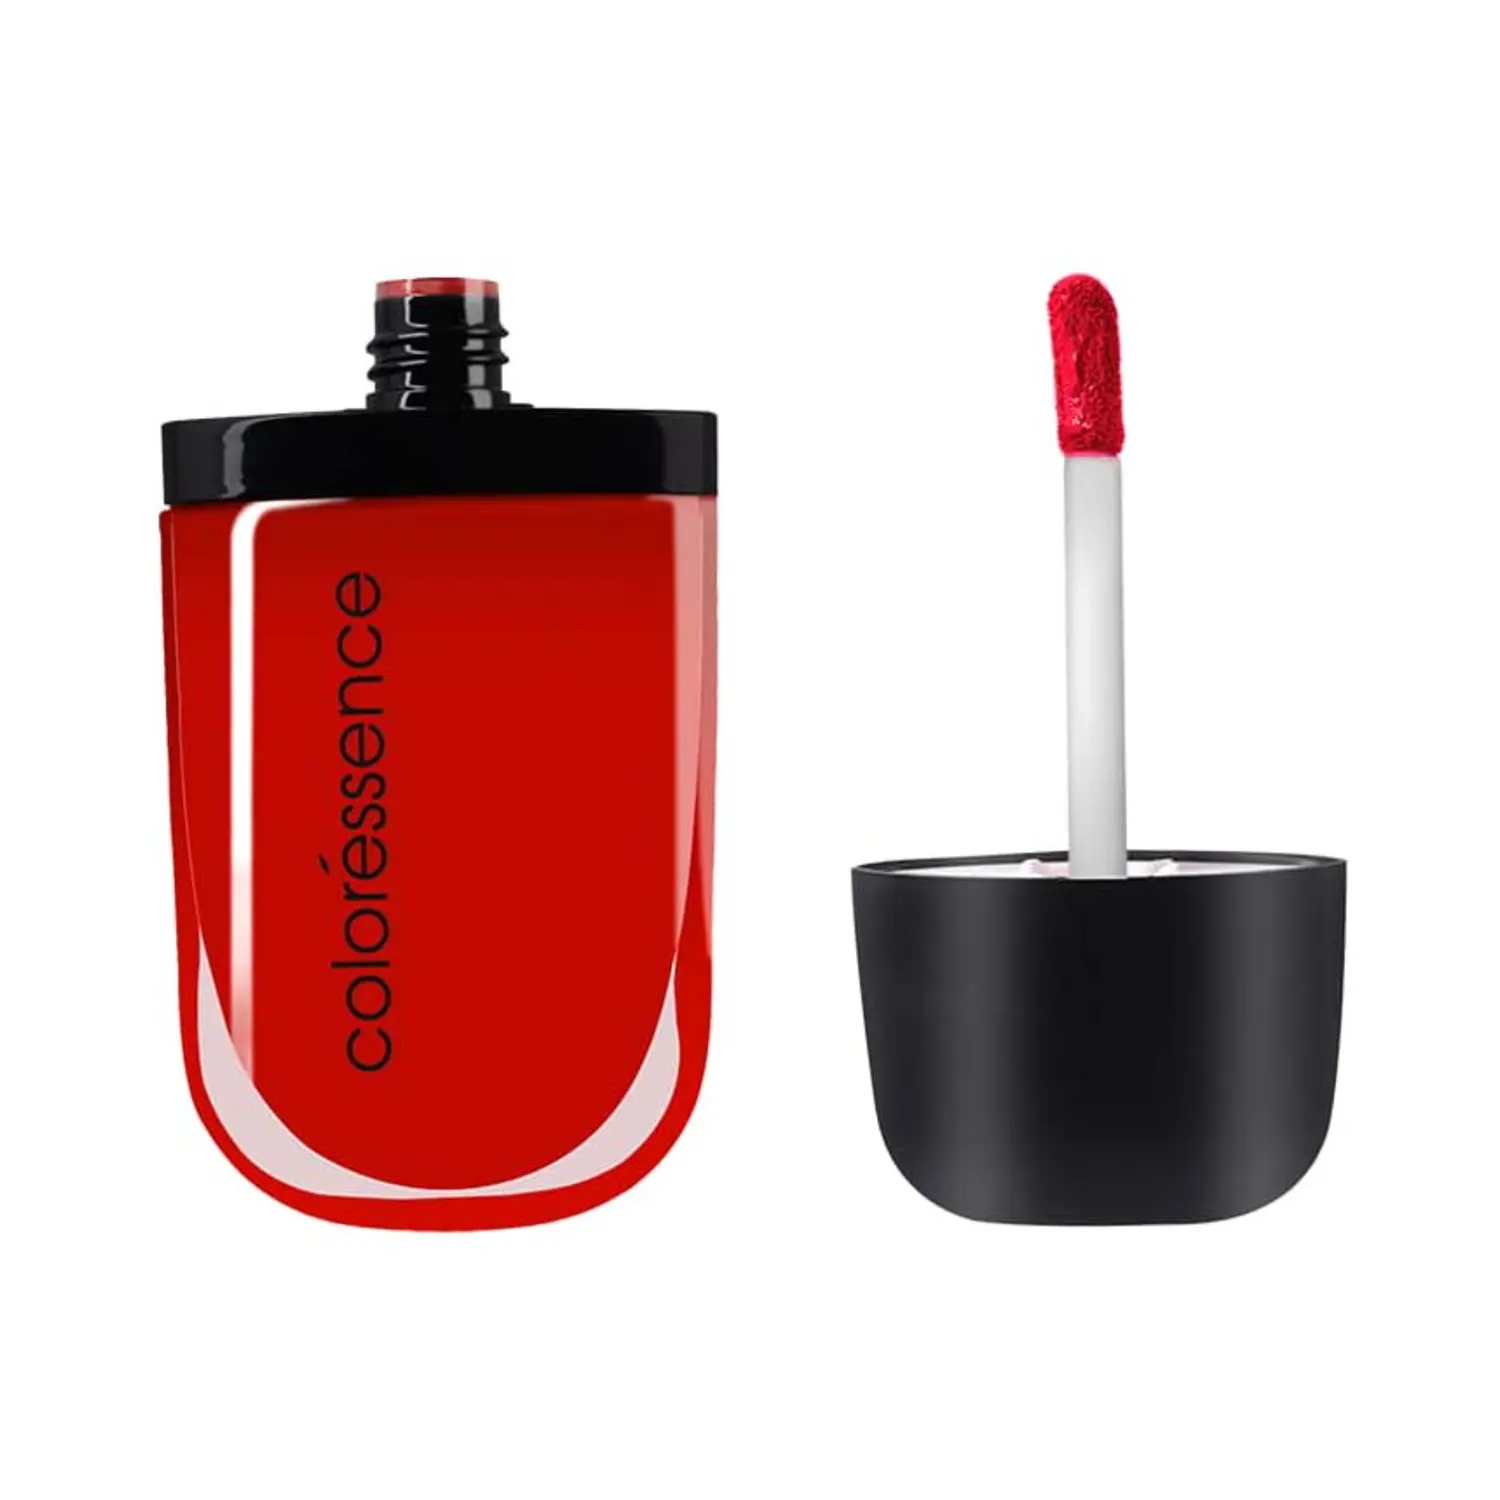 Coloressence | Coloressence Intense Soft Matte Liquid Lip Color Lipstick - Siren Red (8ml)